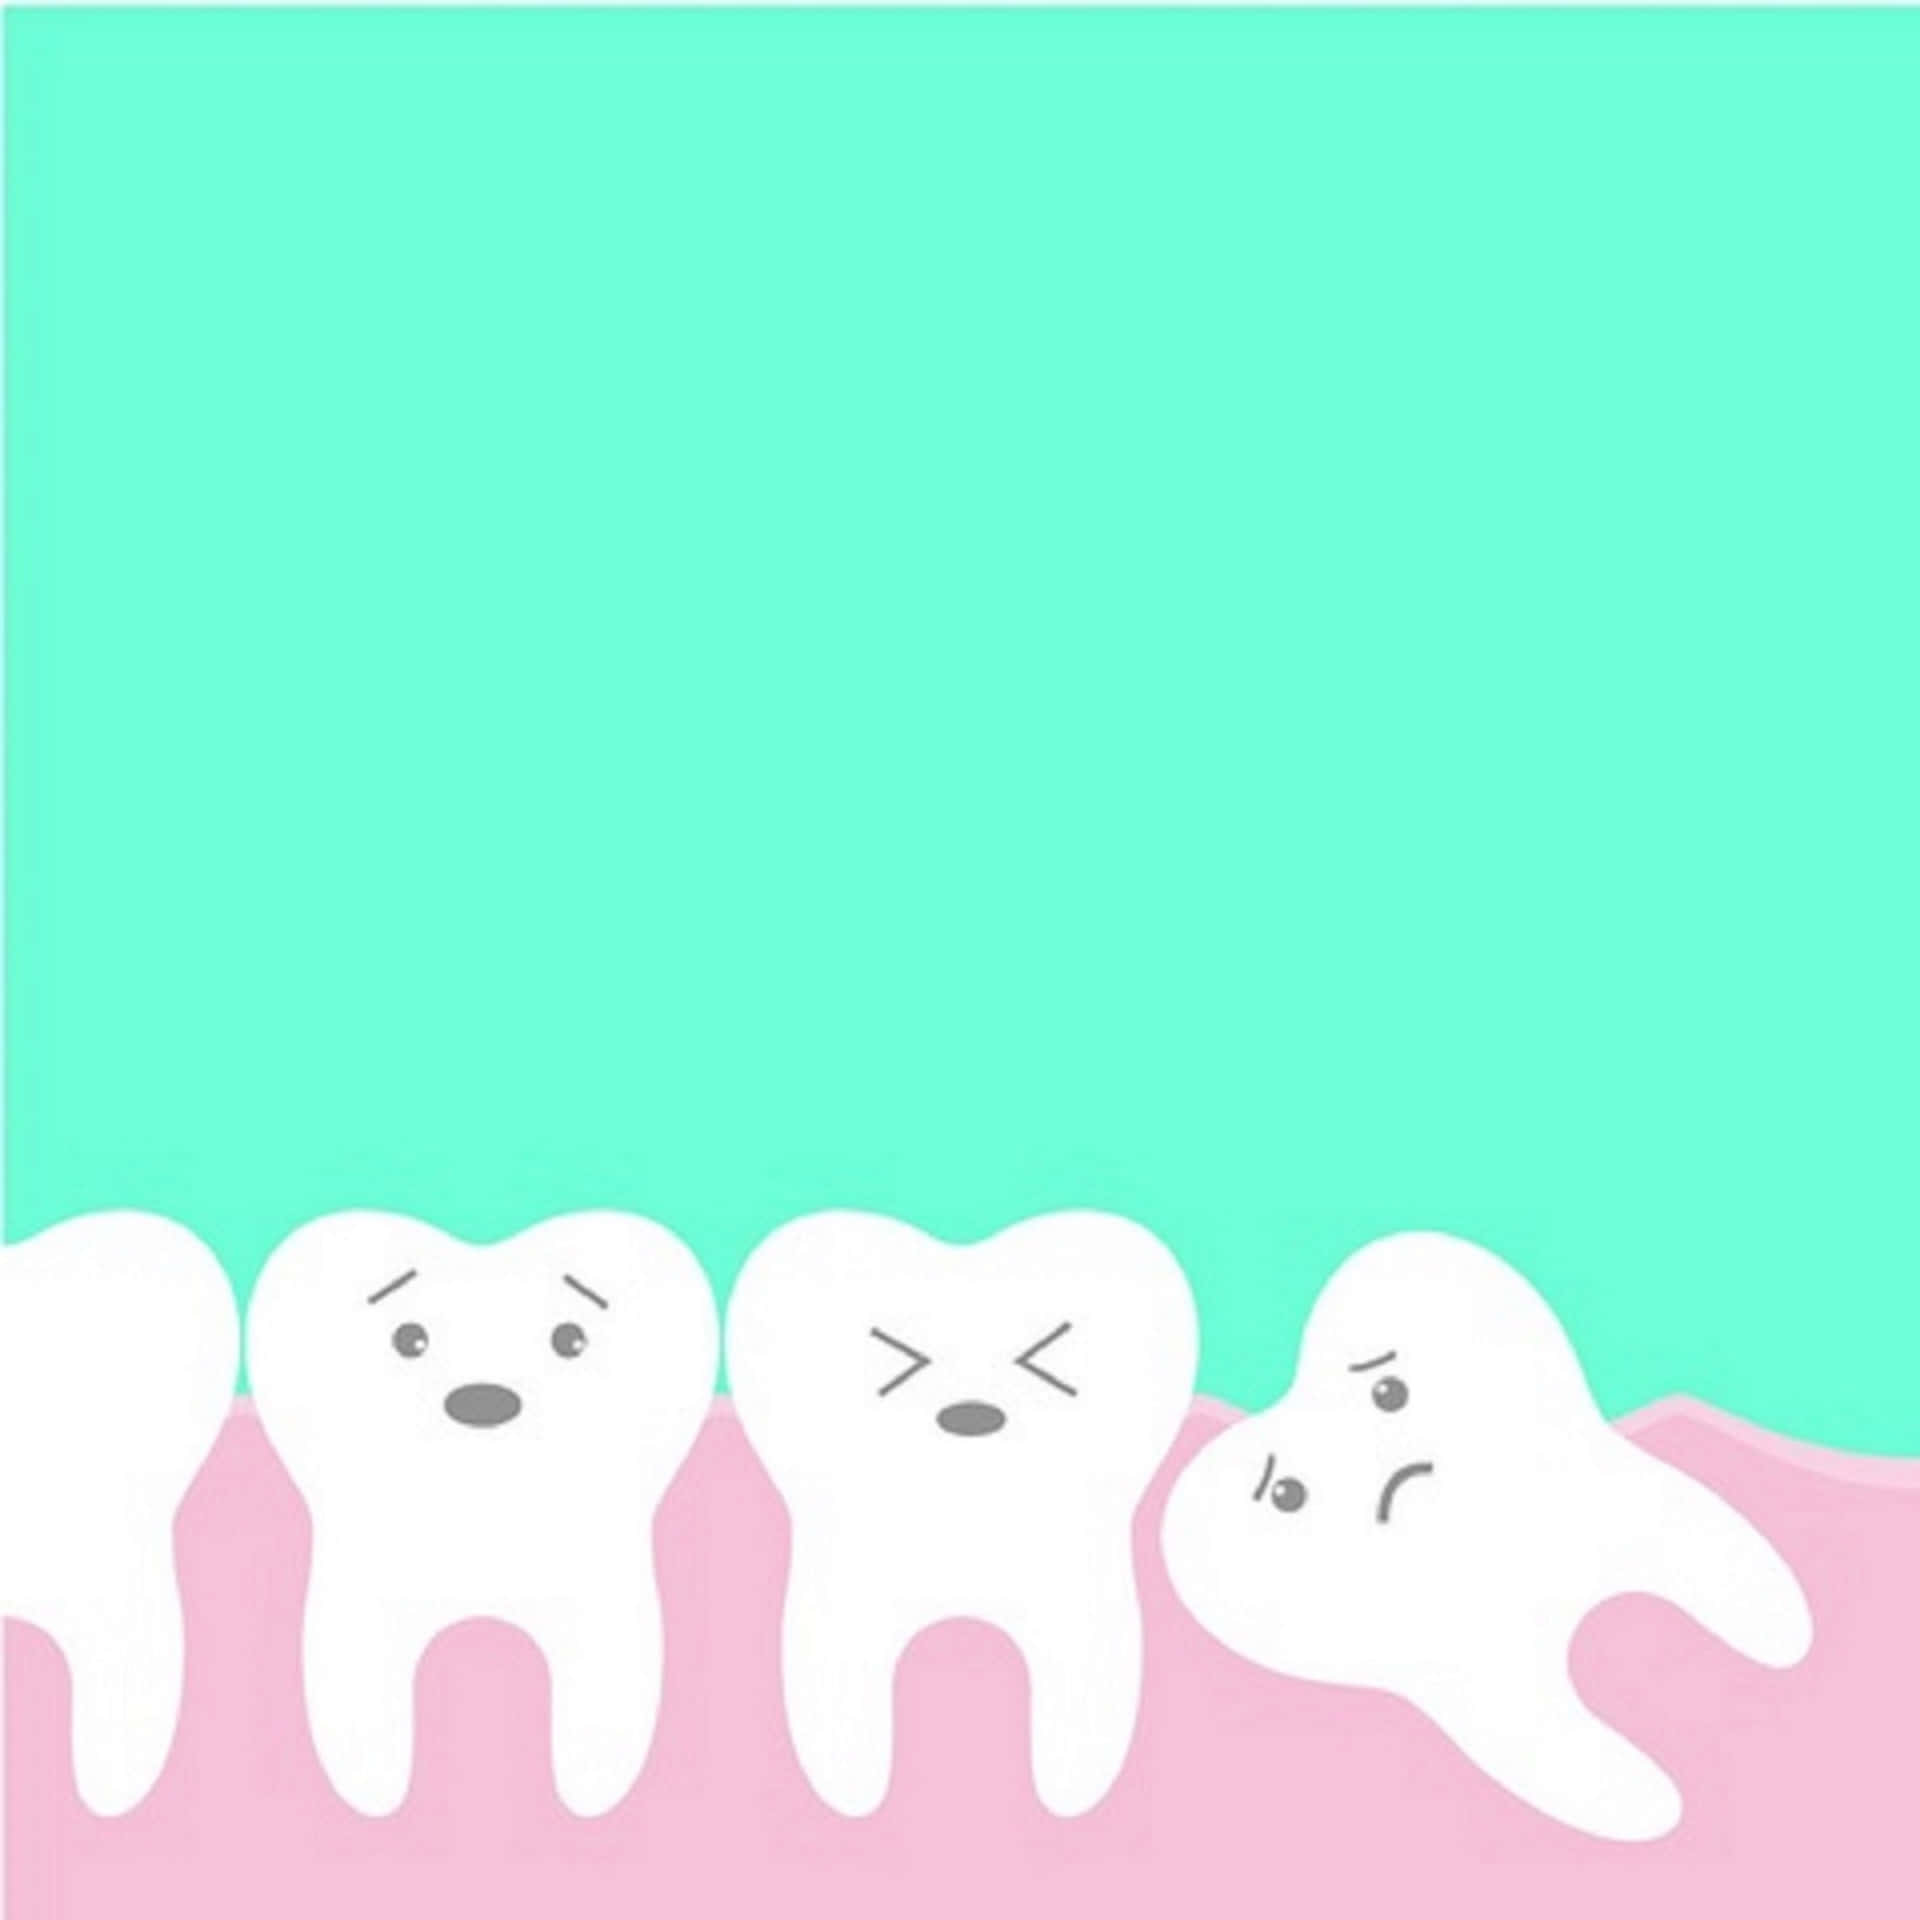 Dentist Background